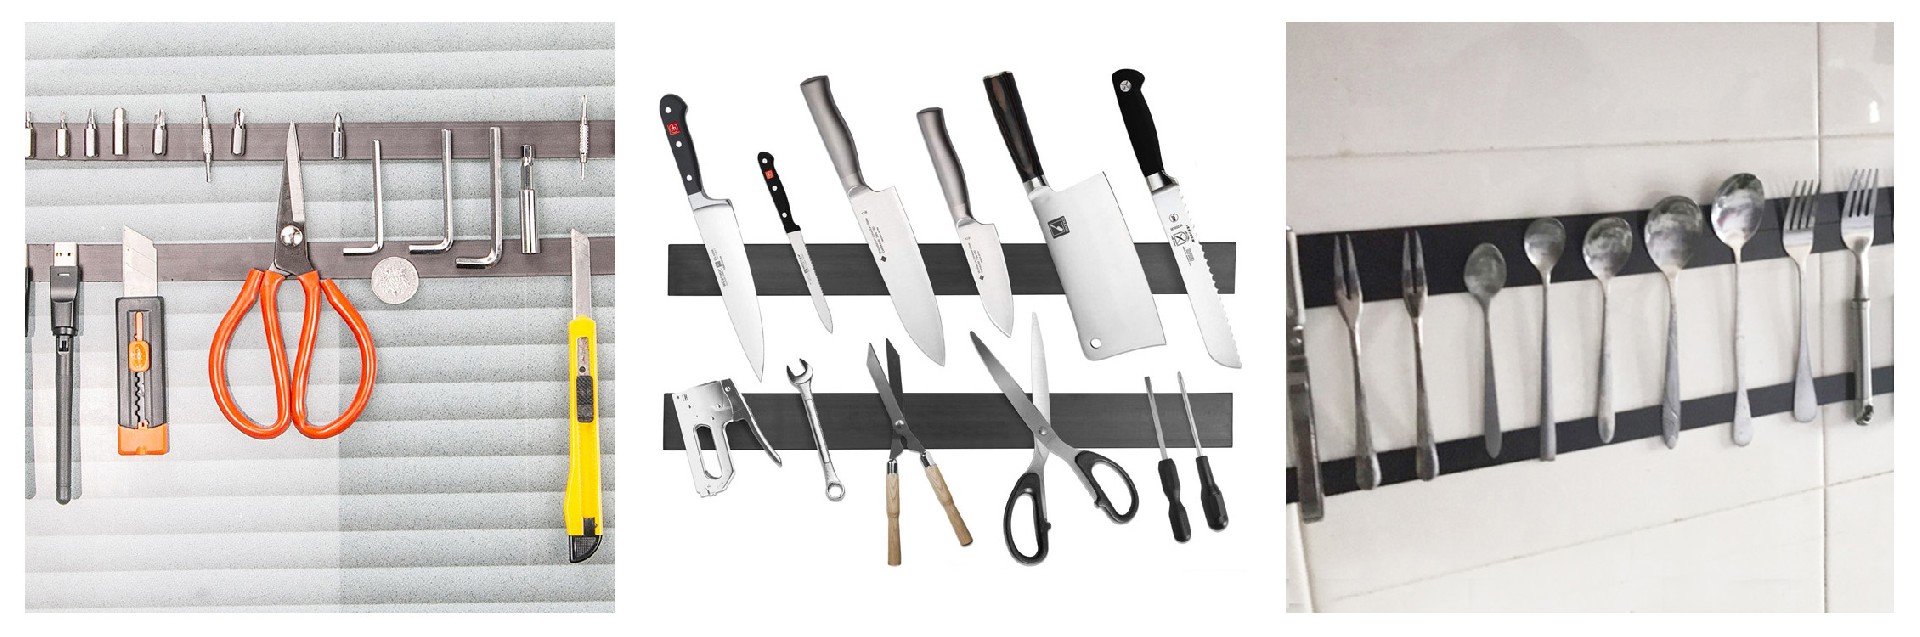 详情图3-厨具刀具工具集合1.jpg